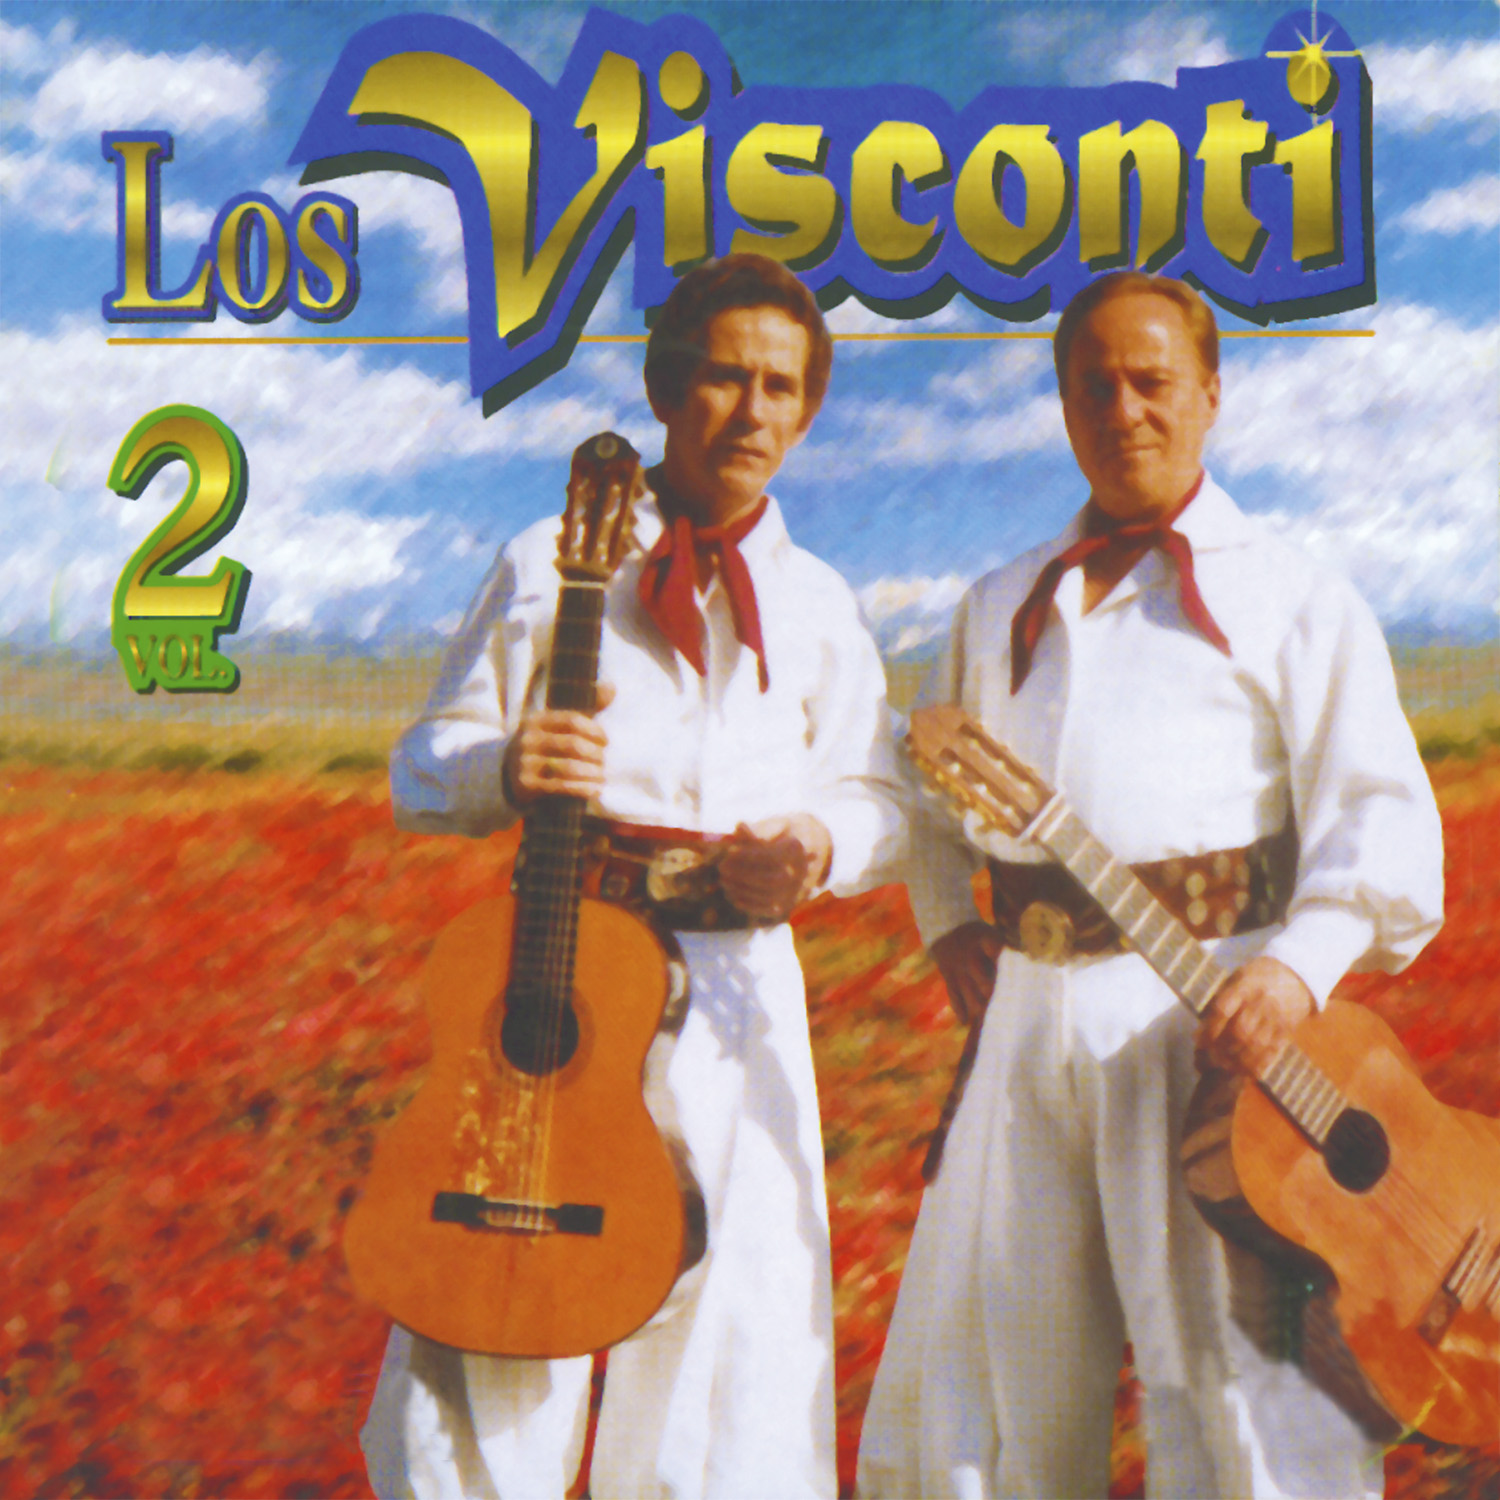 Los Visconti (Vol. 2)